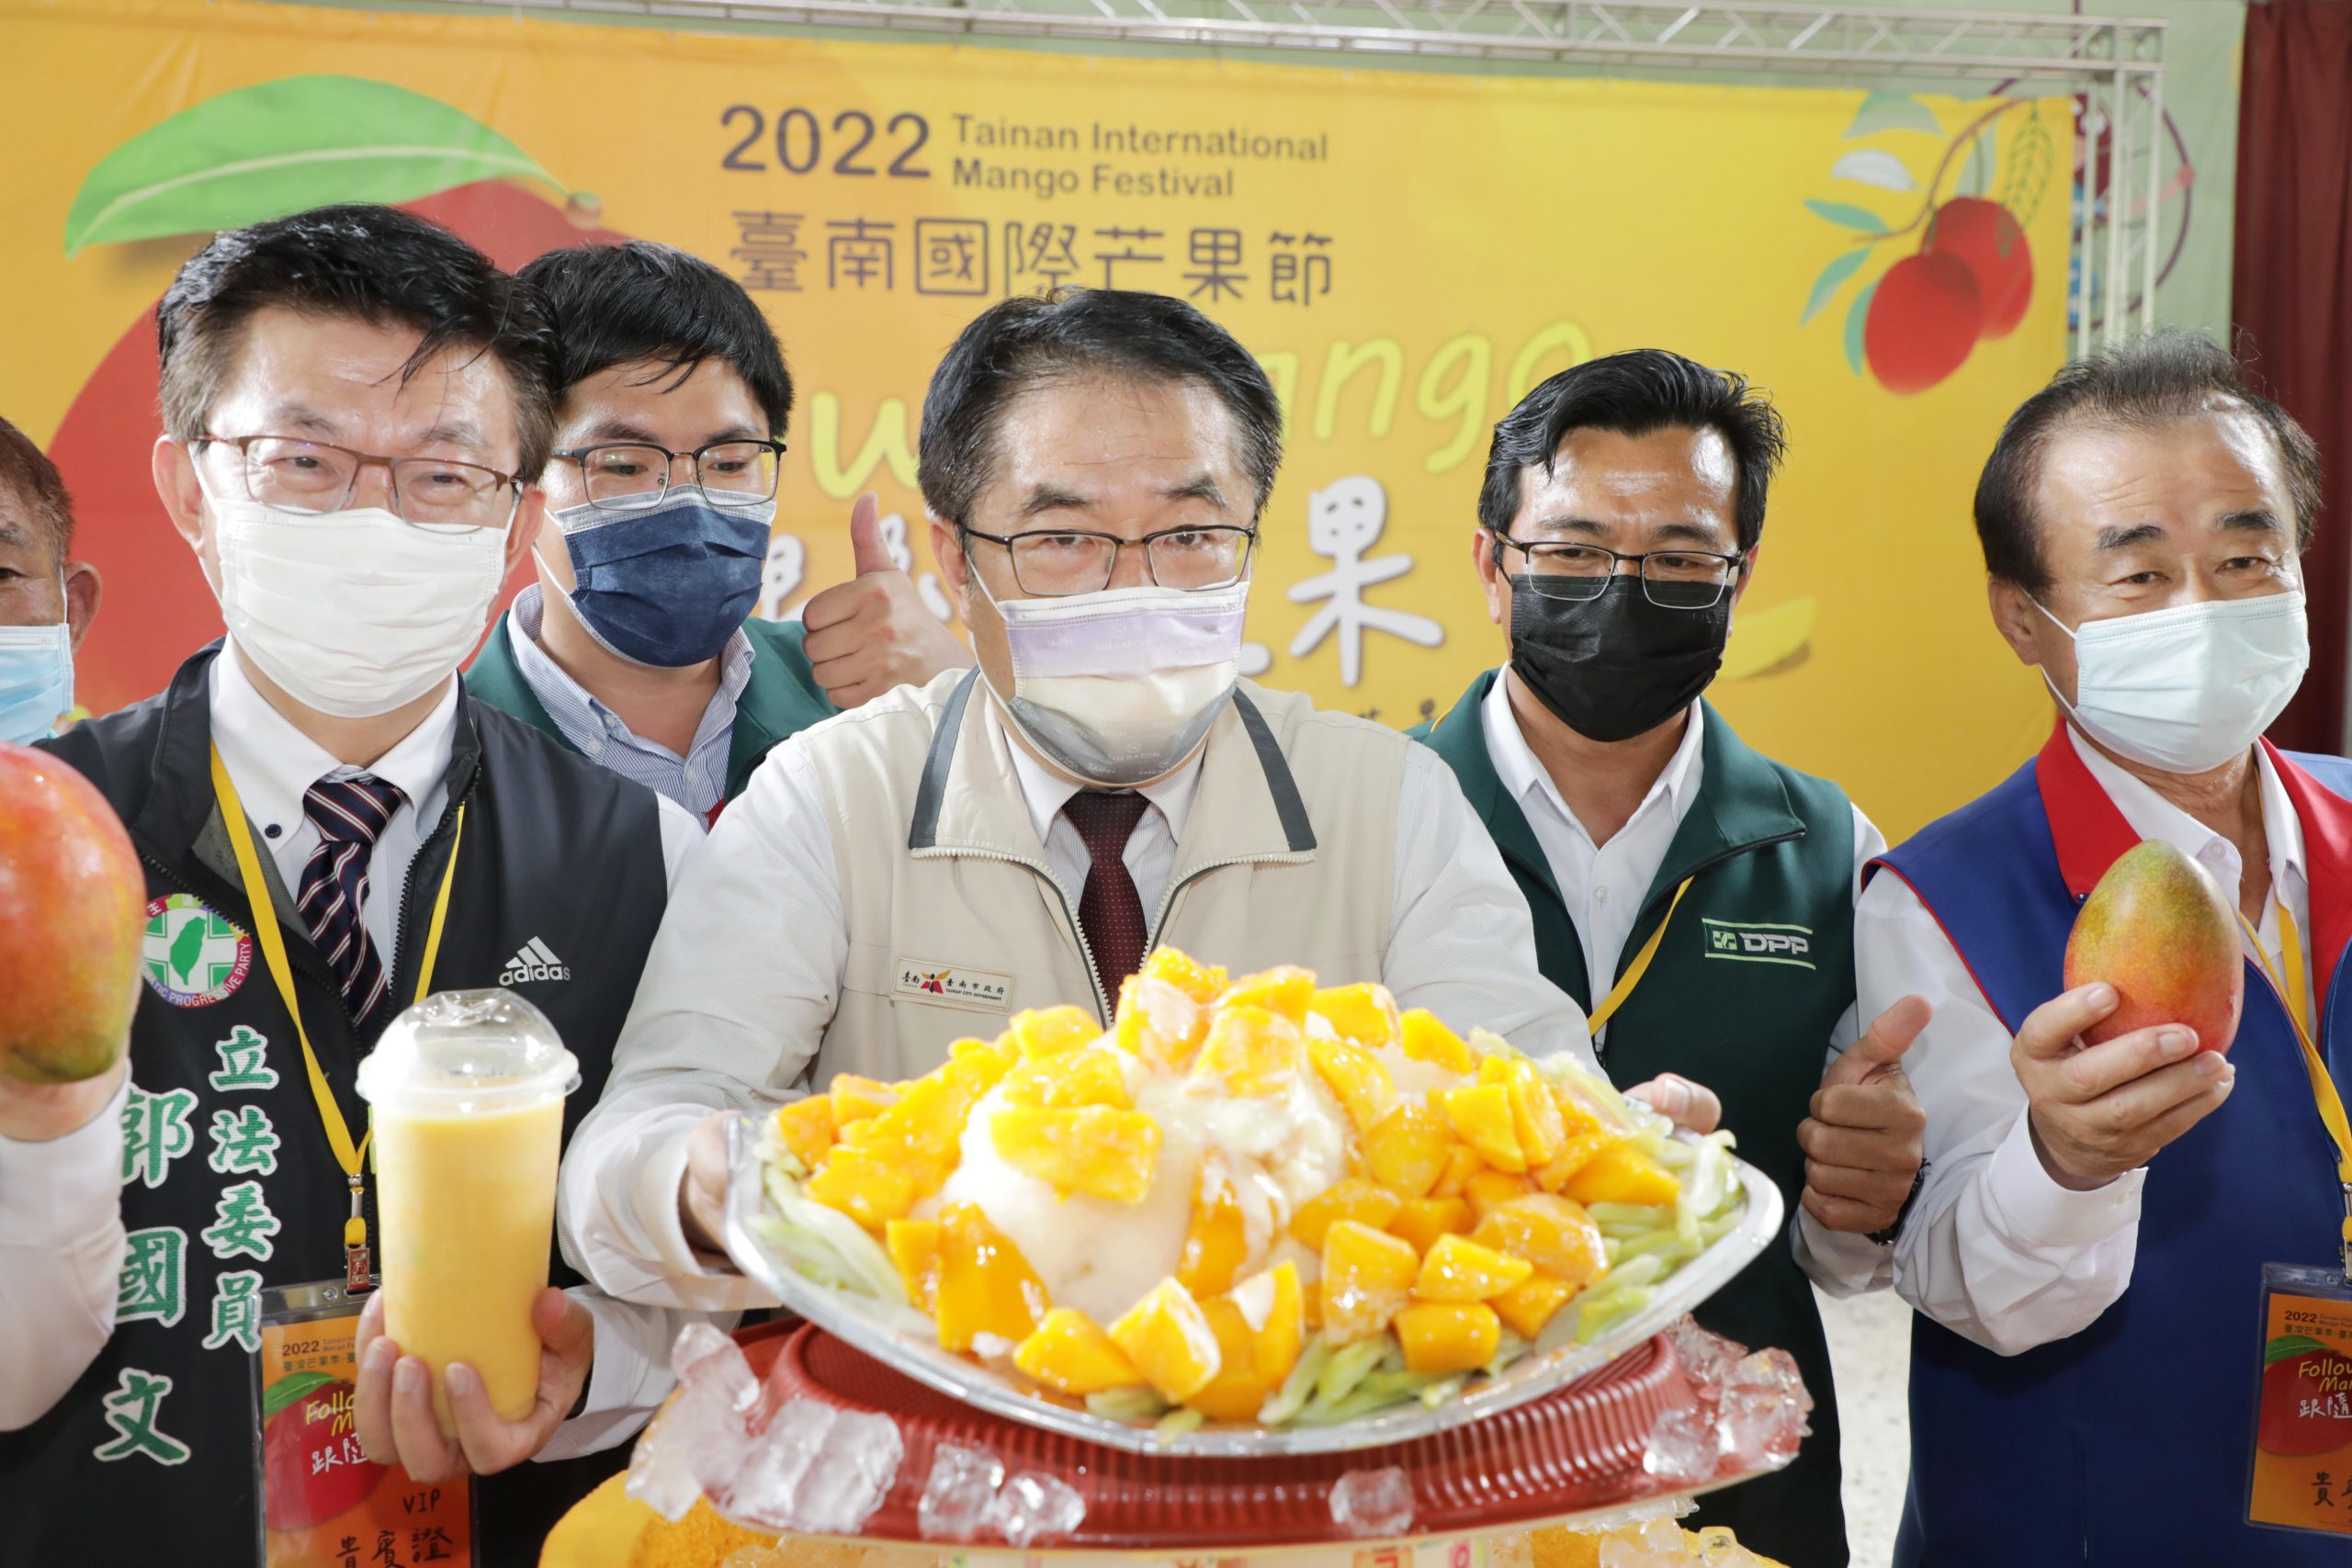 2022台南國際芒果節熱鬧開幕 黃偉哲邀民眾跟著芒果走透透